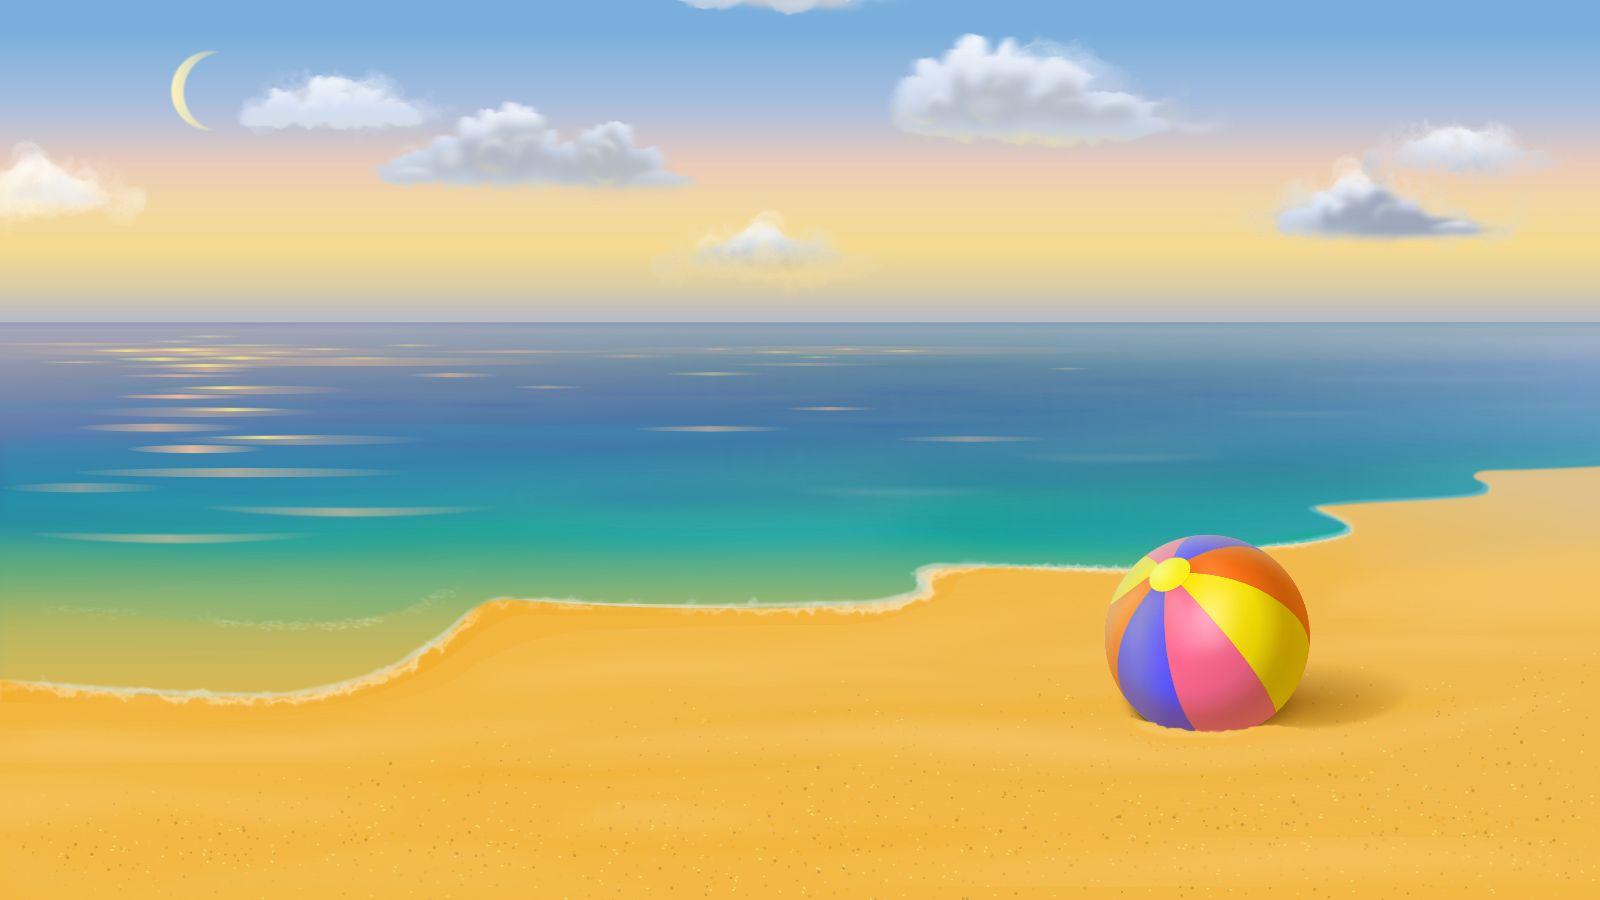 Descarga gratuita de fondo de pantalla para móvil de Mar, Playa, Verano, Costa, Día Festivo, Artístico.